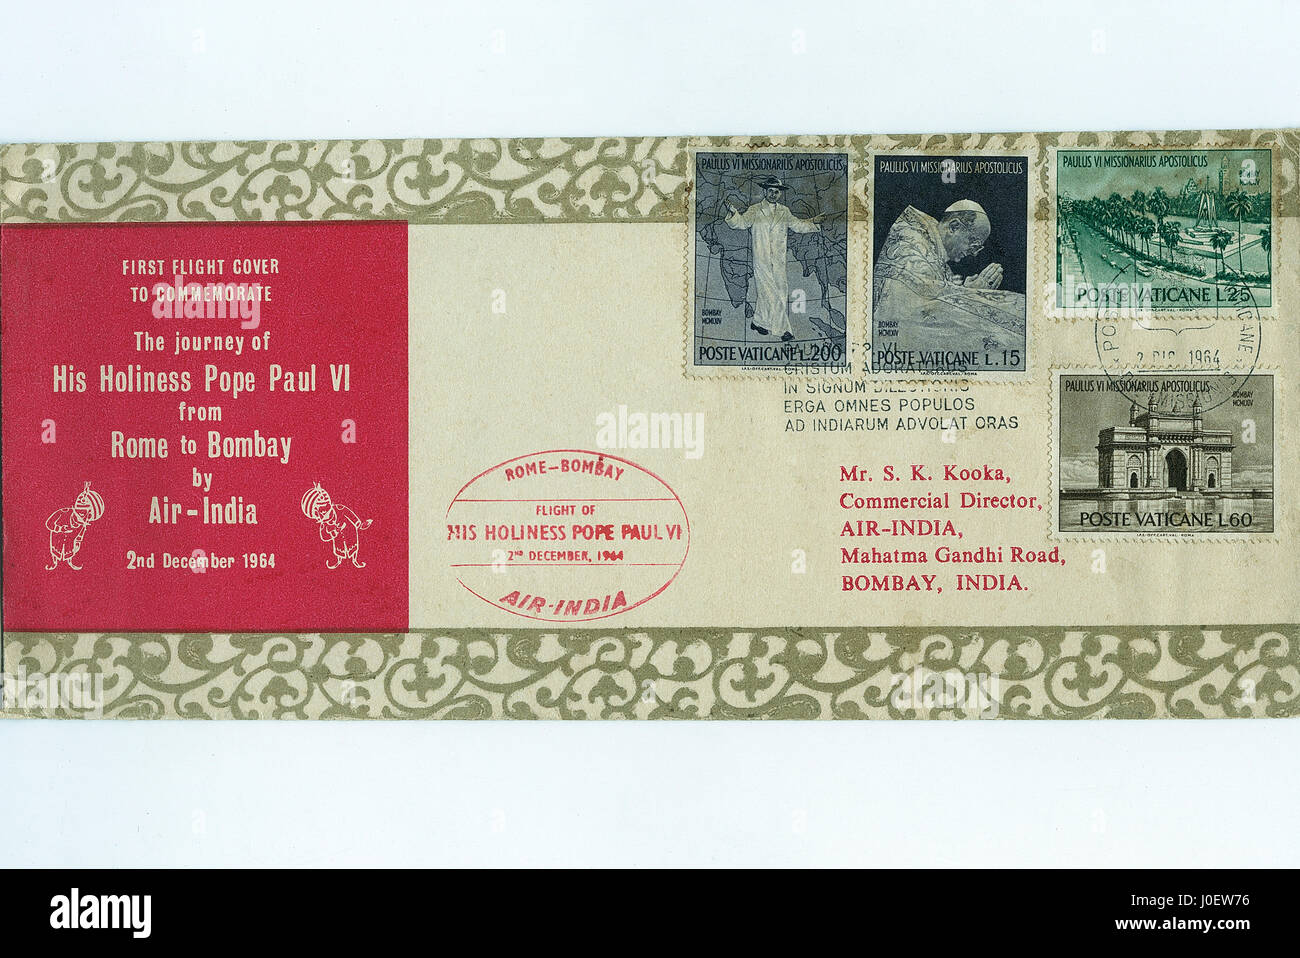 Primer vuelo cubierta para conmemorar, sellos, India, Asia Foto de stock